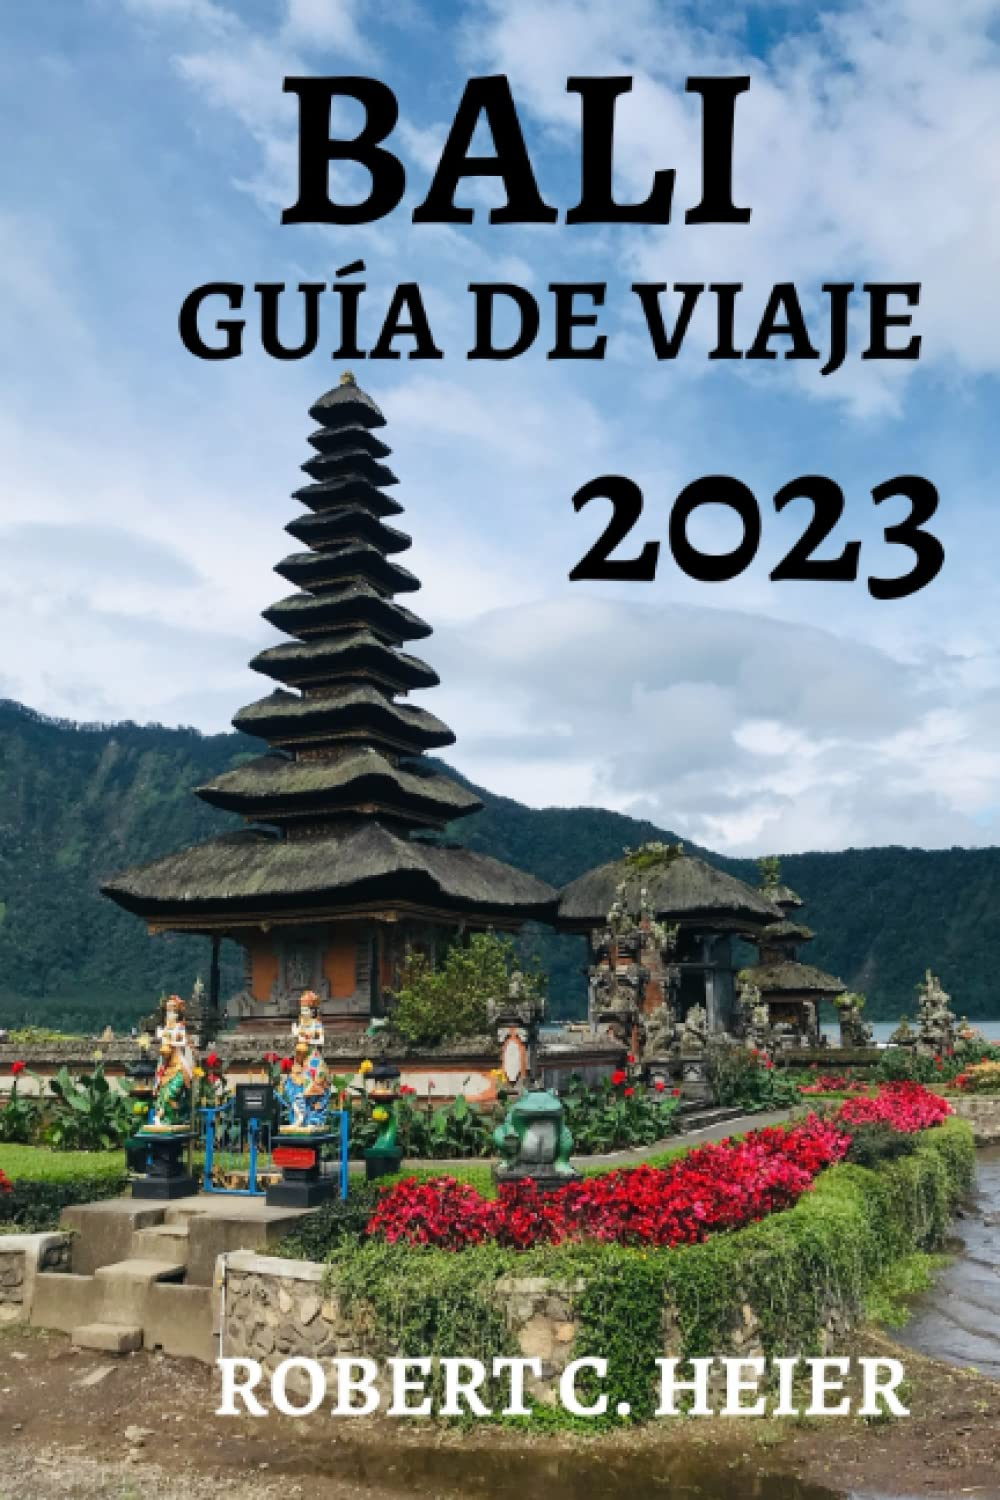 BALI GUÍA DE VIAJE 2023: La guía completa de las maravillas naturales, los tesoros culturales y los sabores locales de la isla (Spanish Edition)